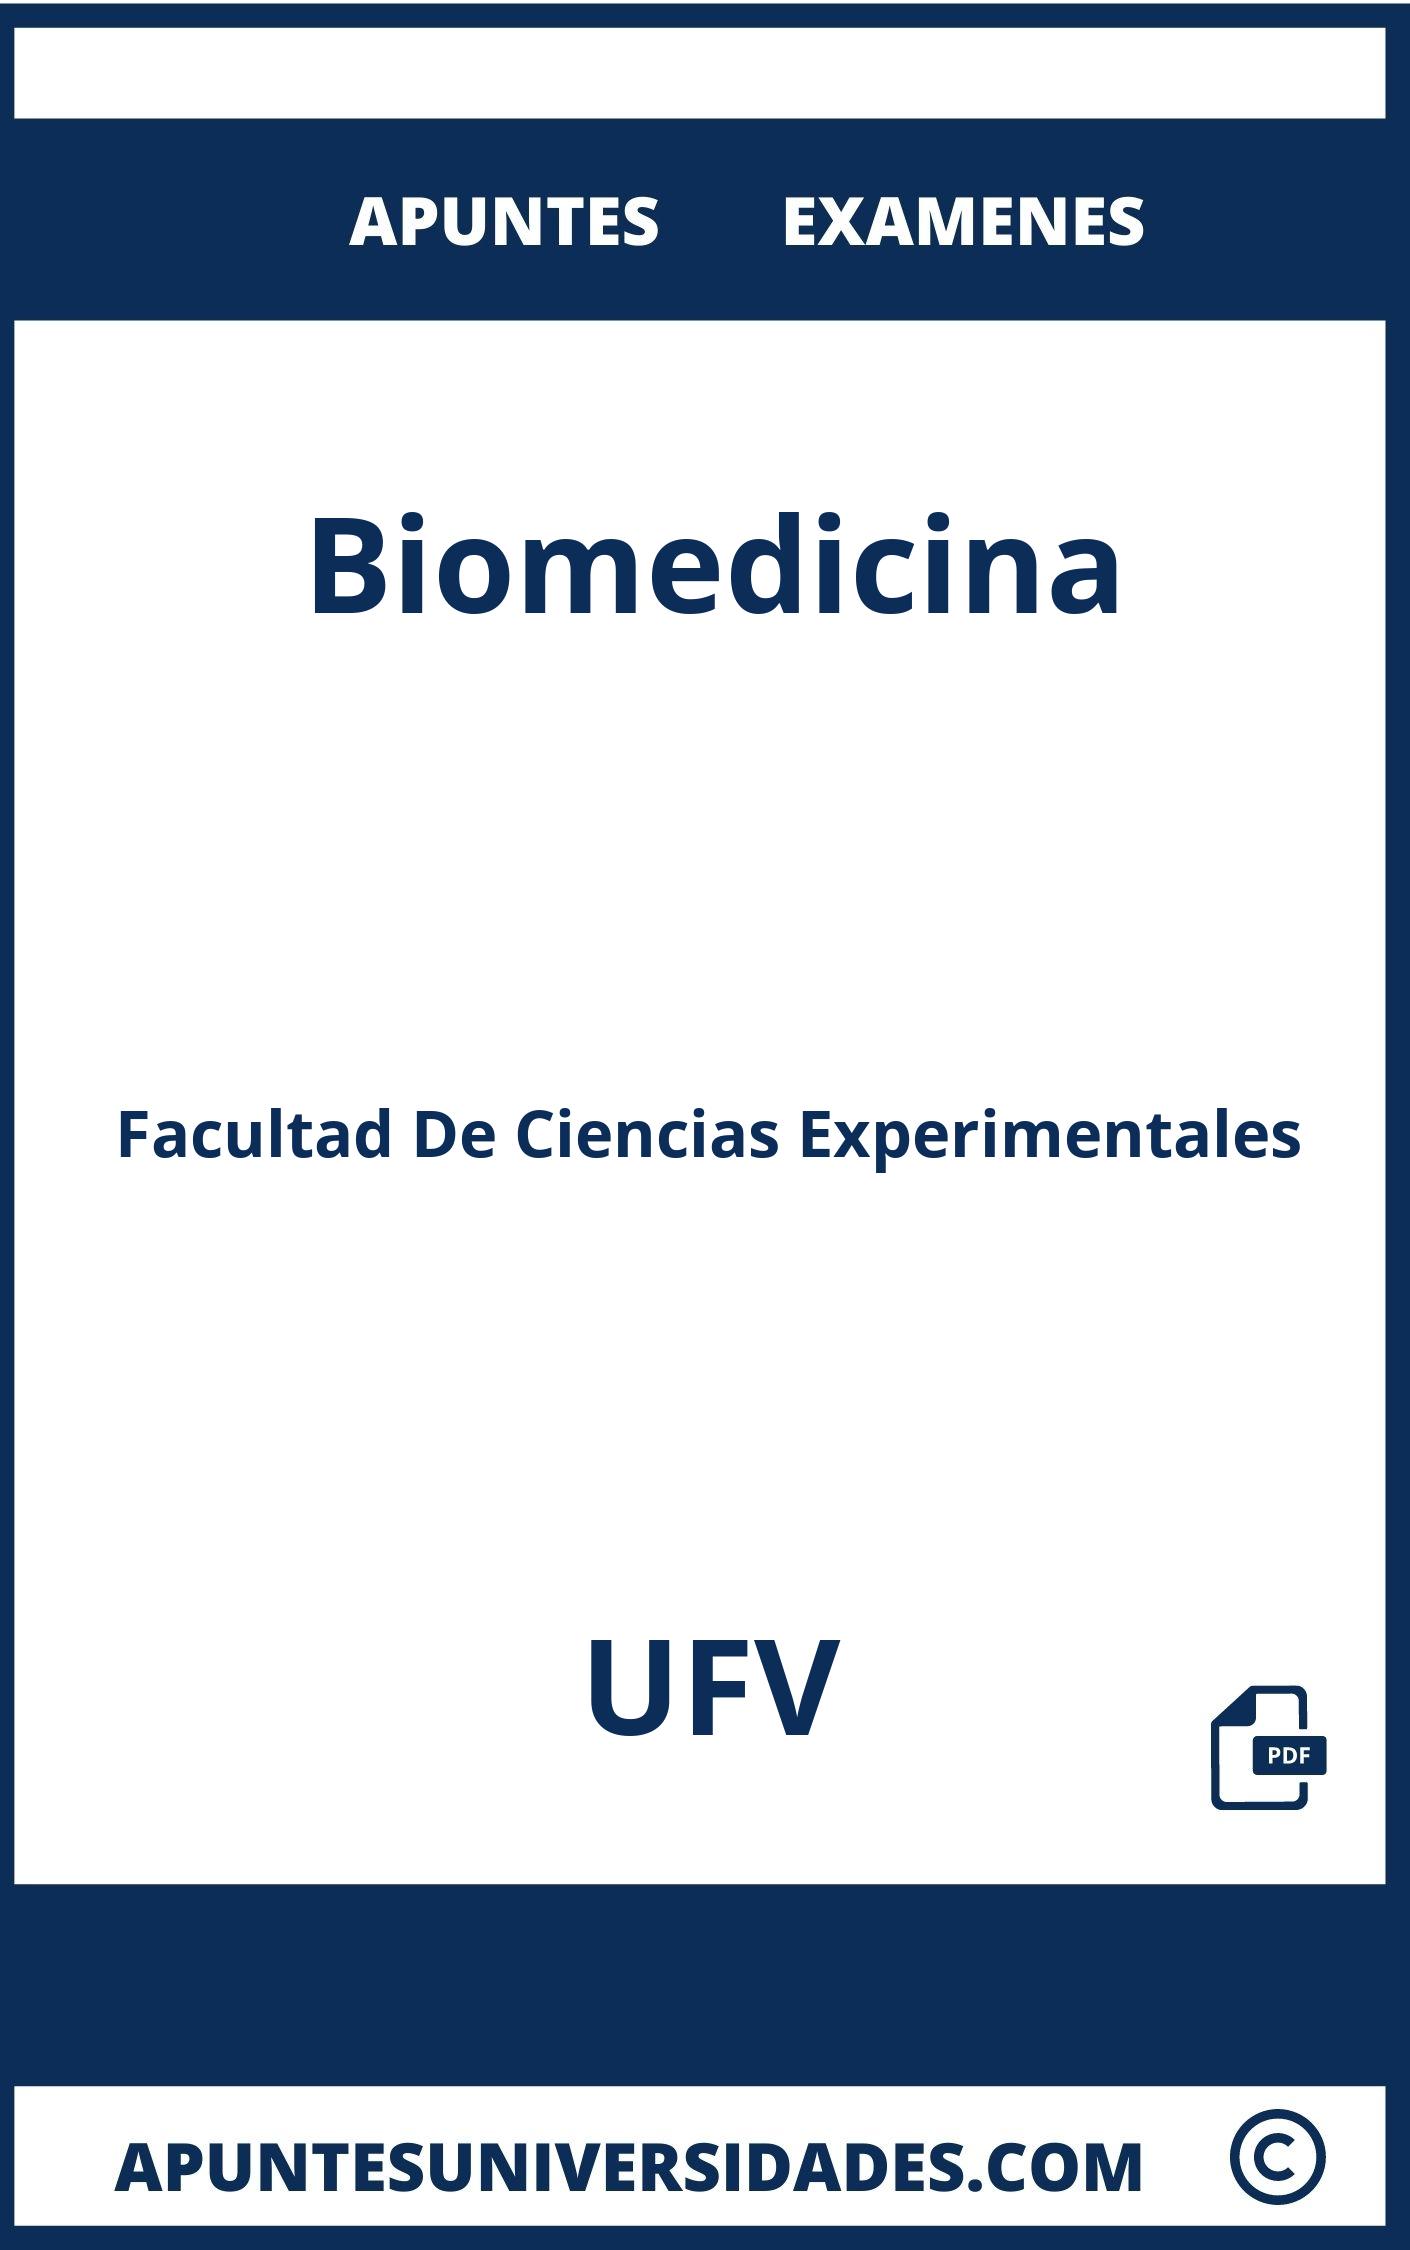 Apuntes Examenes Biomedicina UFV